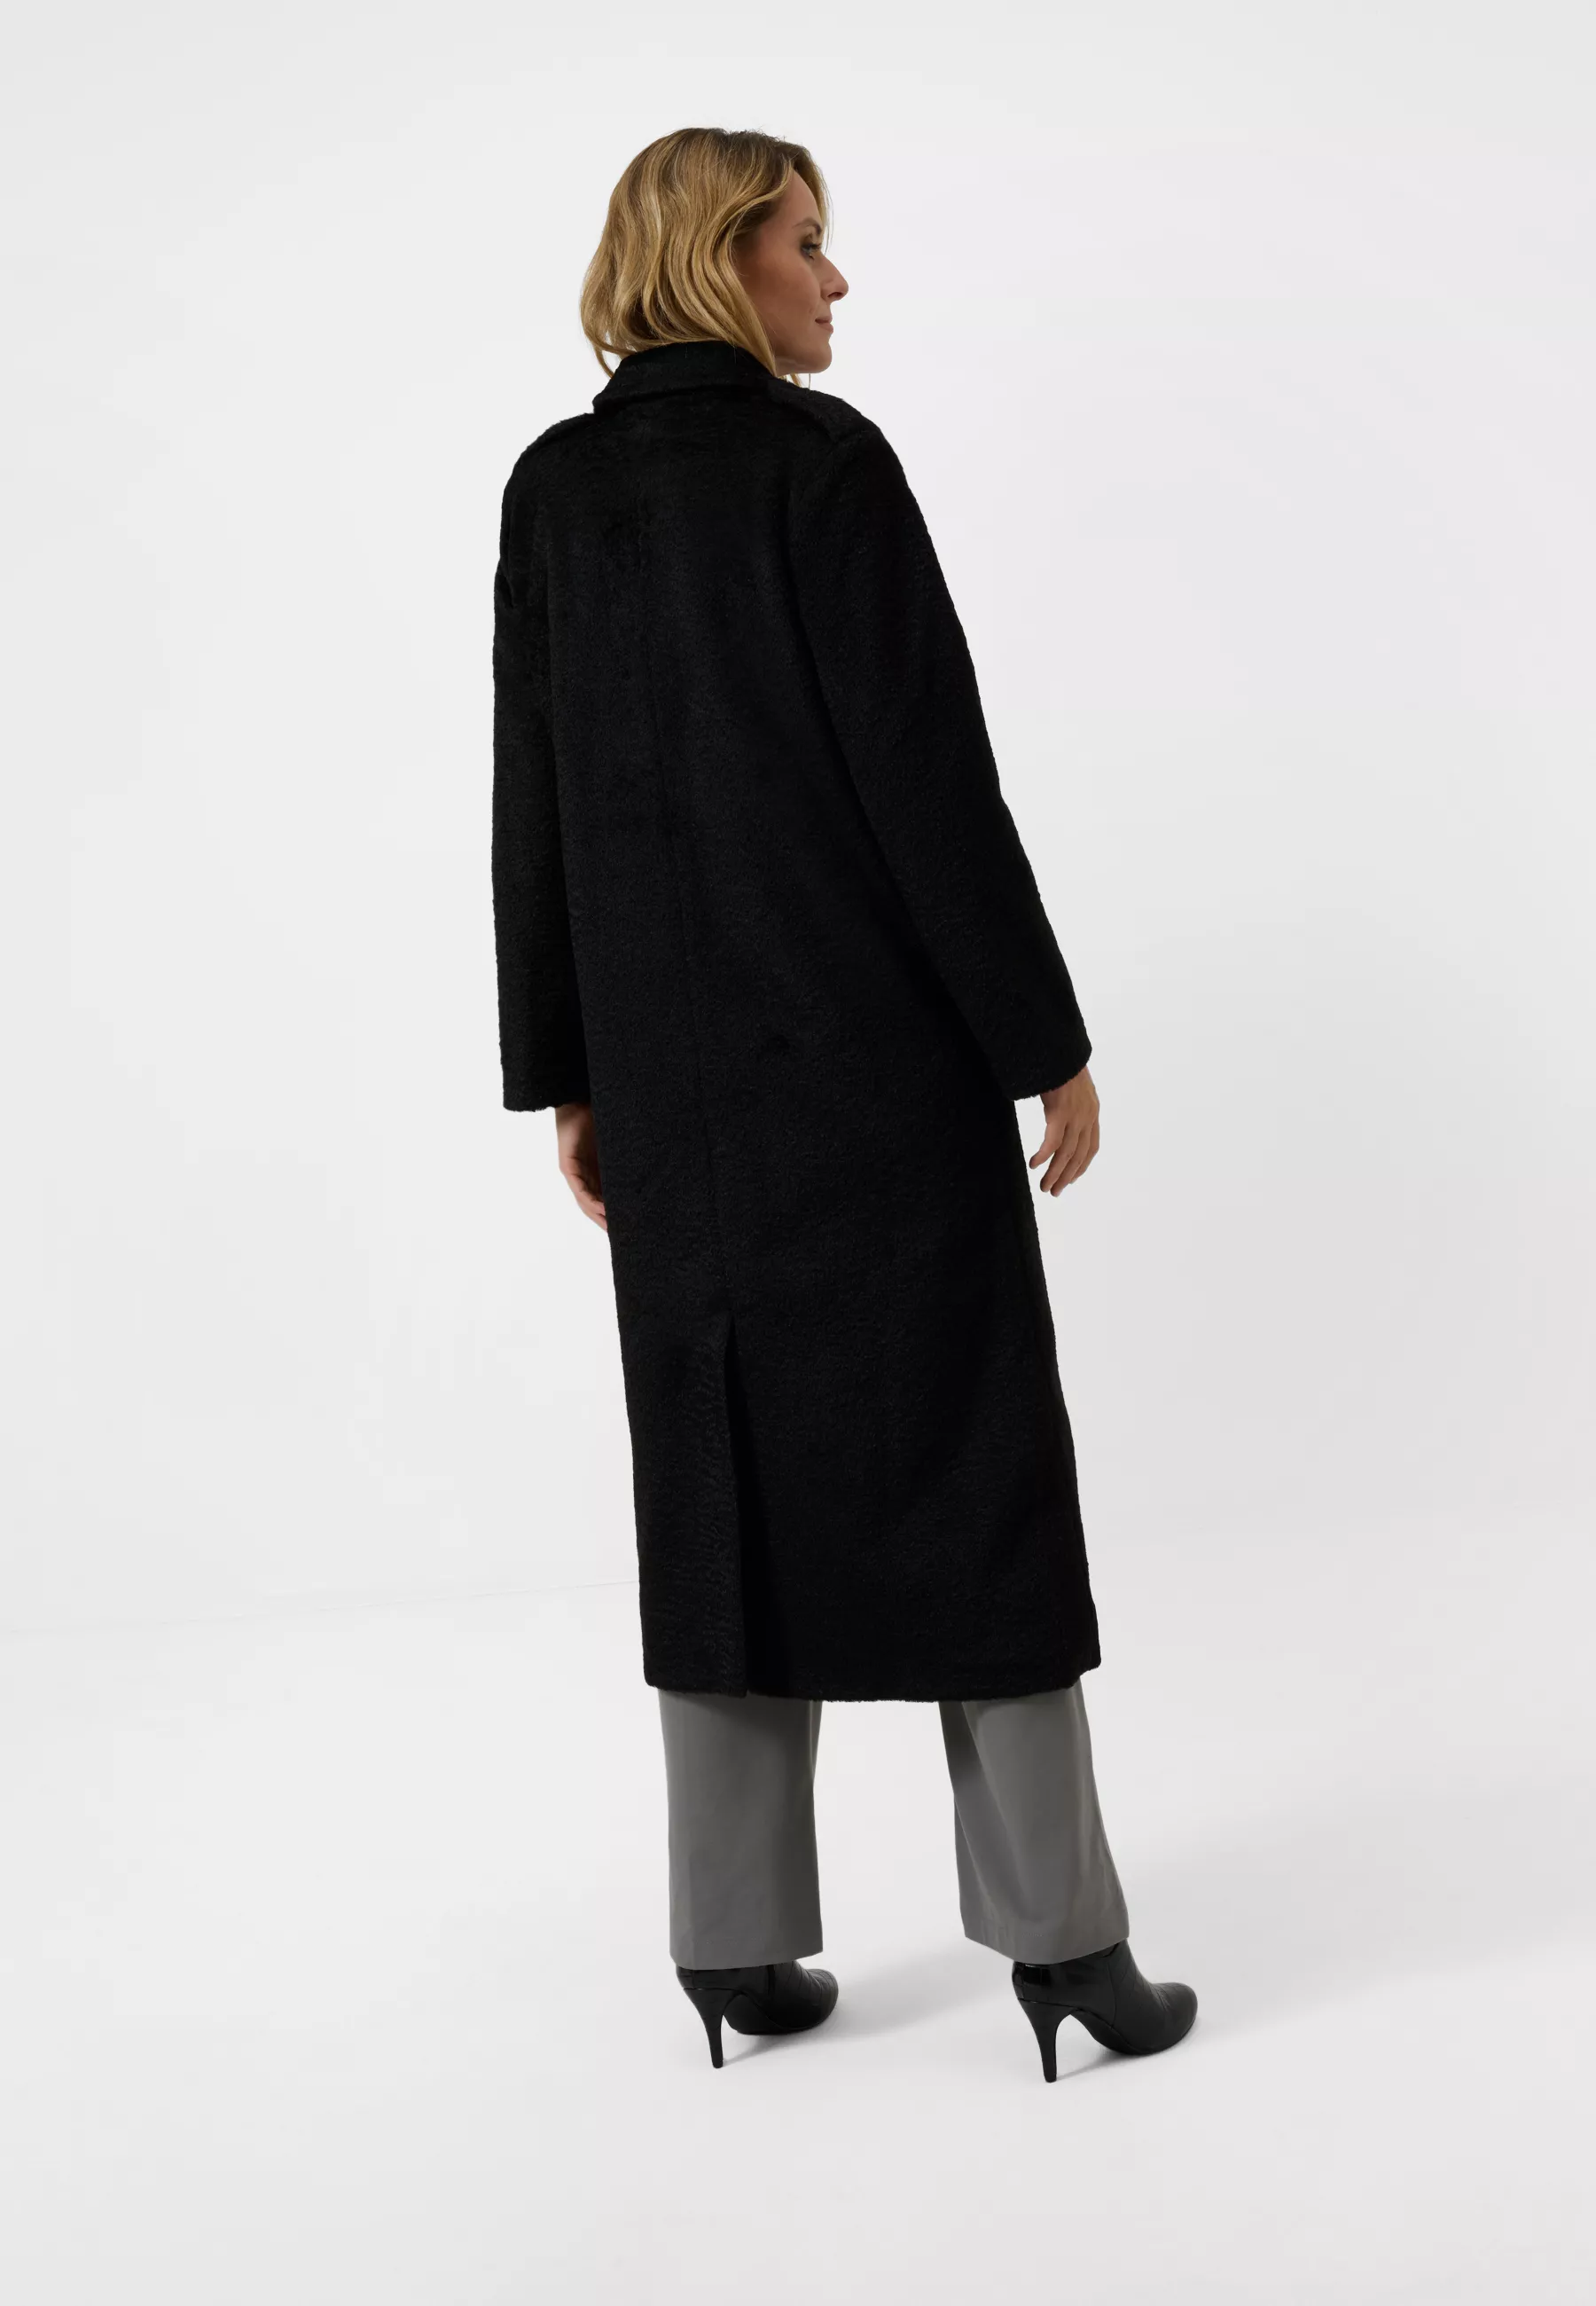 Damen Textil Mantel Pina in Schwarz von Ricano, Rückansicht am Model